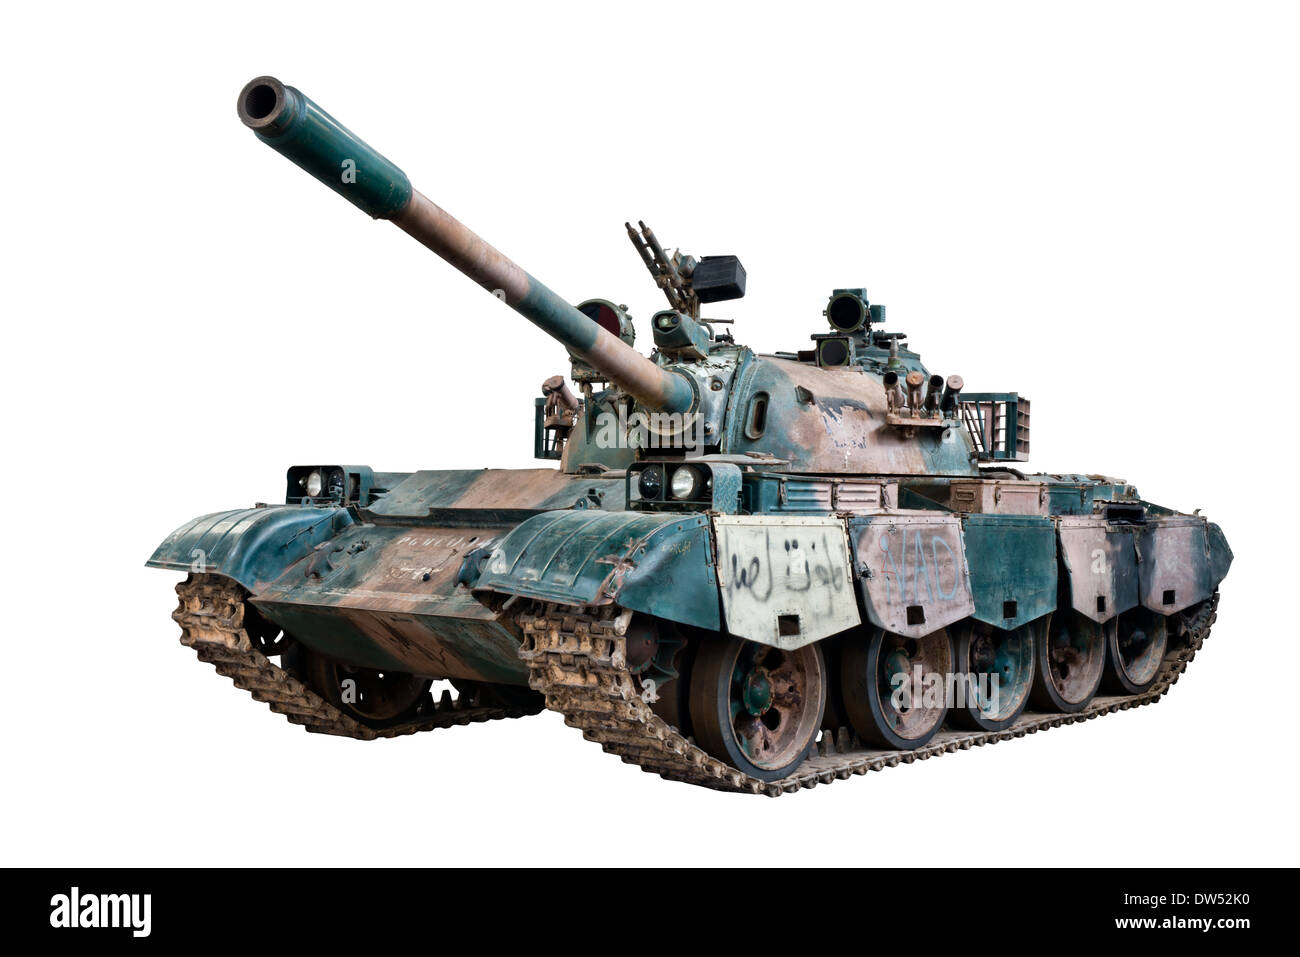 Un coupé ou un char russe T54/55 char de combat principal utilisé par l'armée soviétique et les forces du pacte de Varsovie durant la guerre froide Banque D'Images